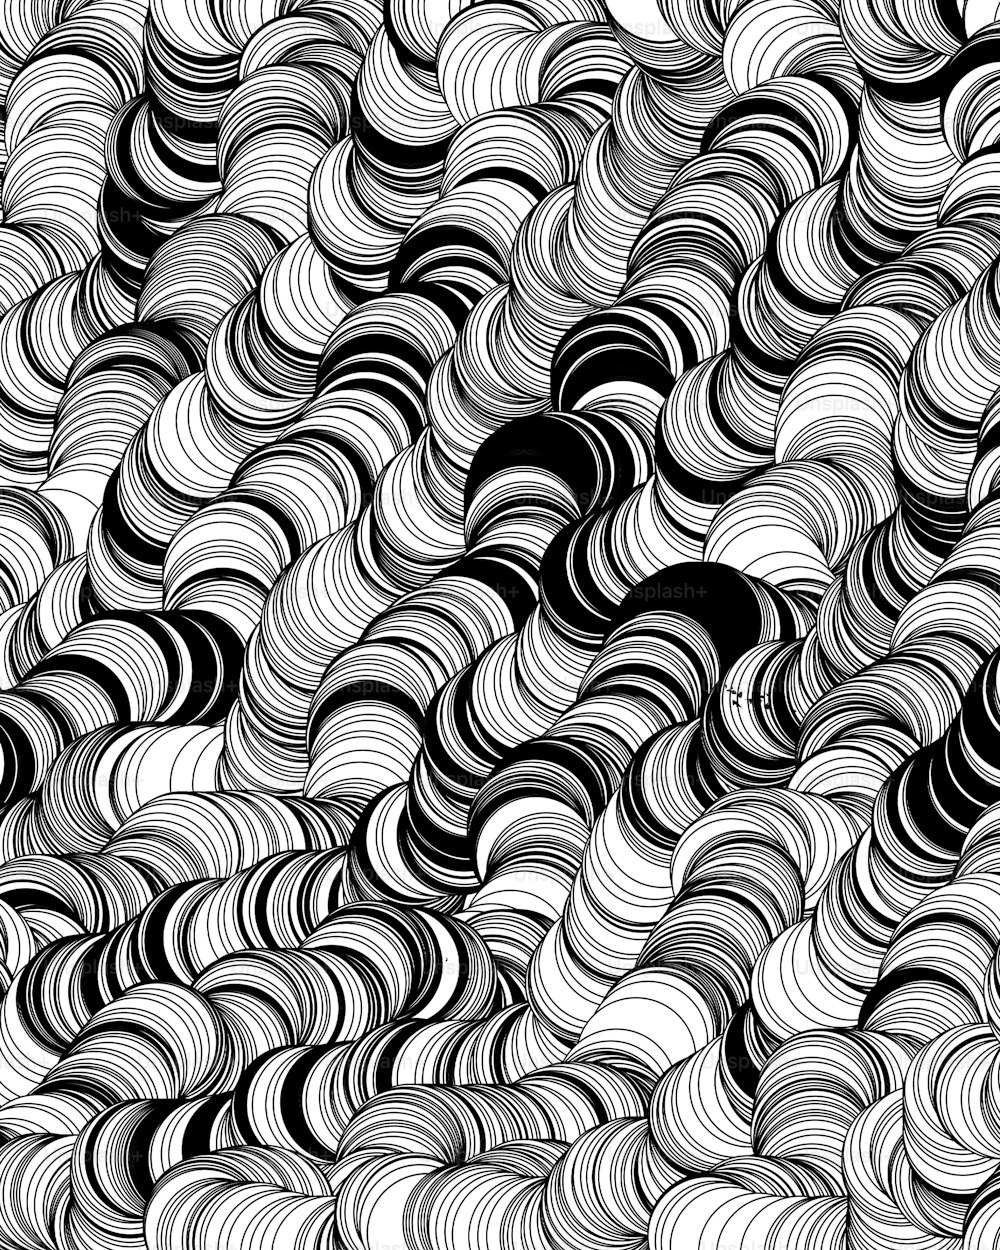 Un fondo abstracto en blanco y negro con líneas onduladas